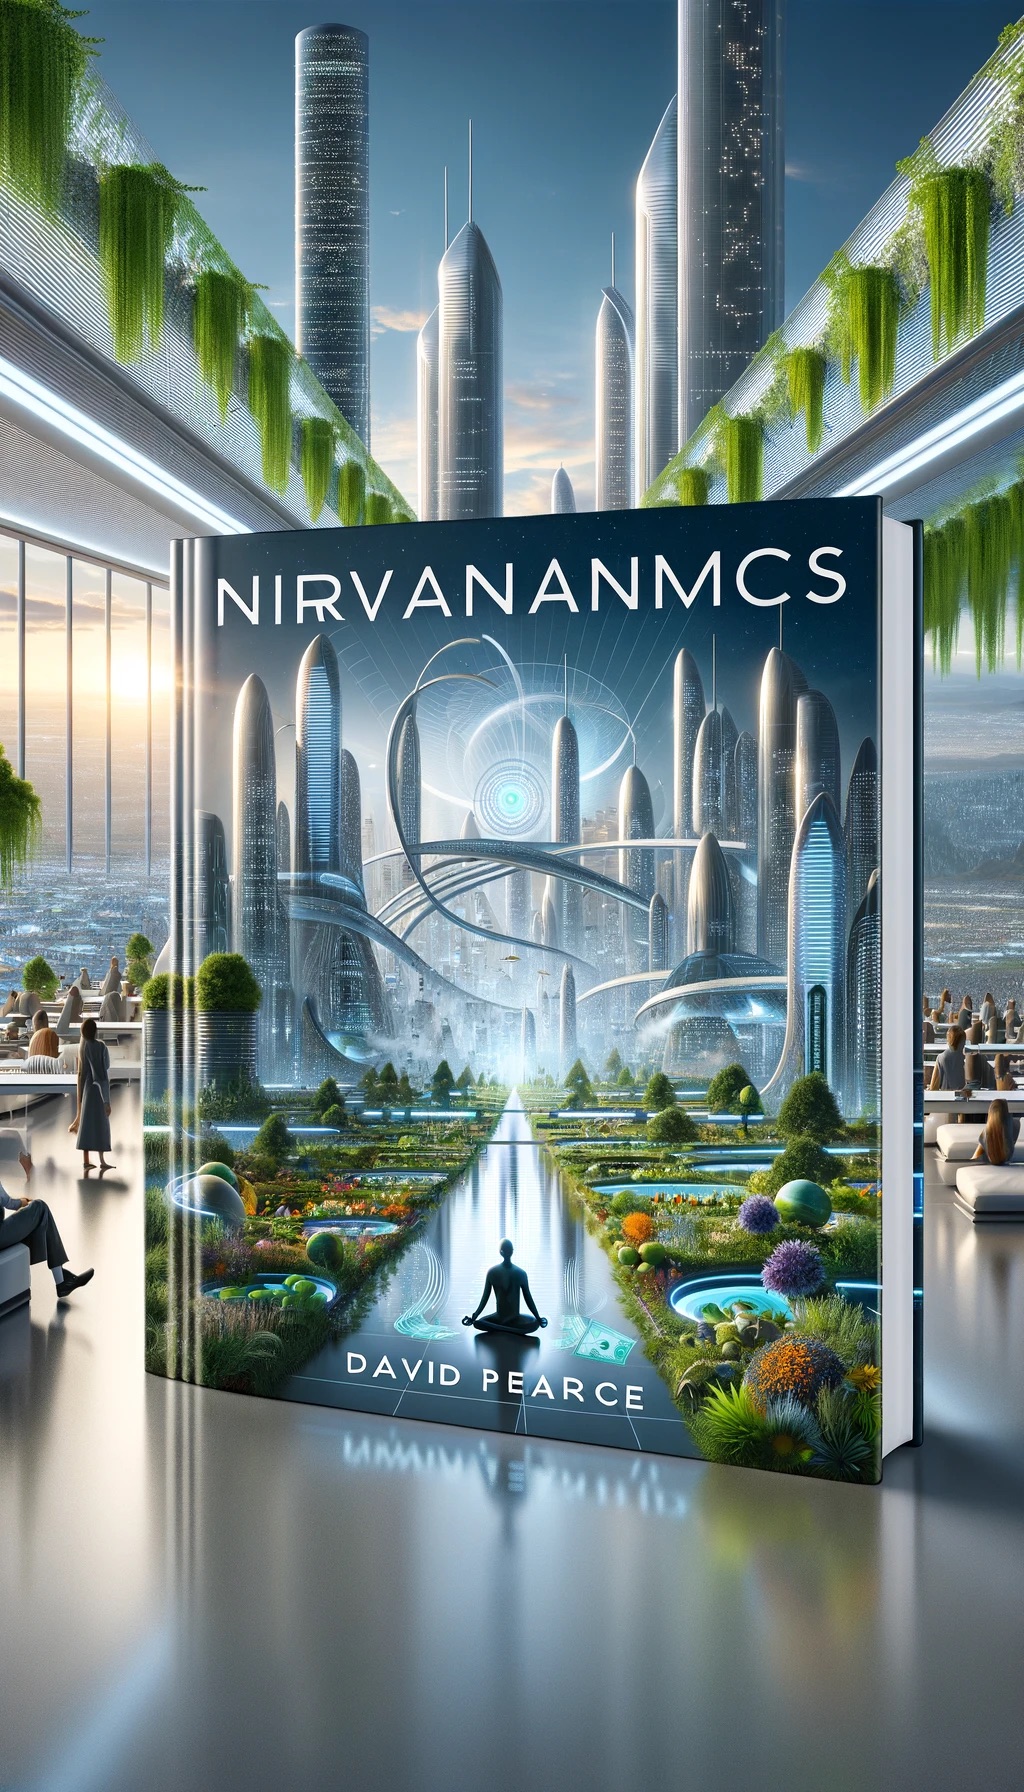 Nirvananomics by David Pearce